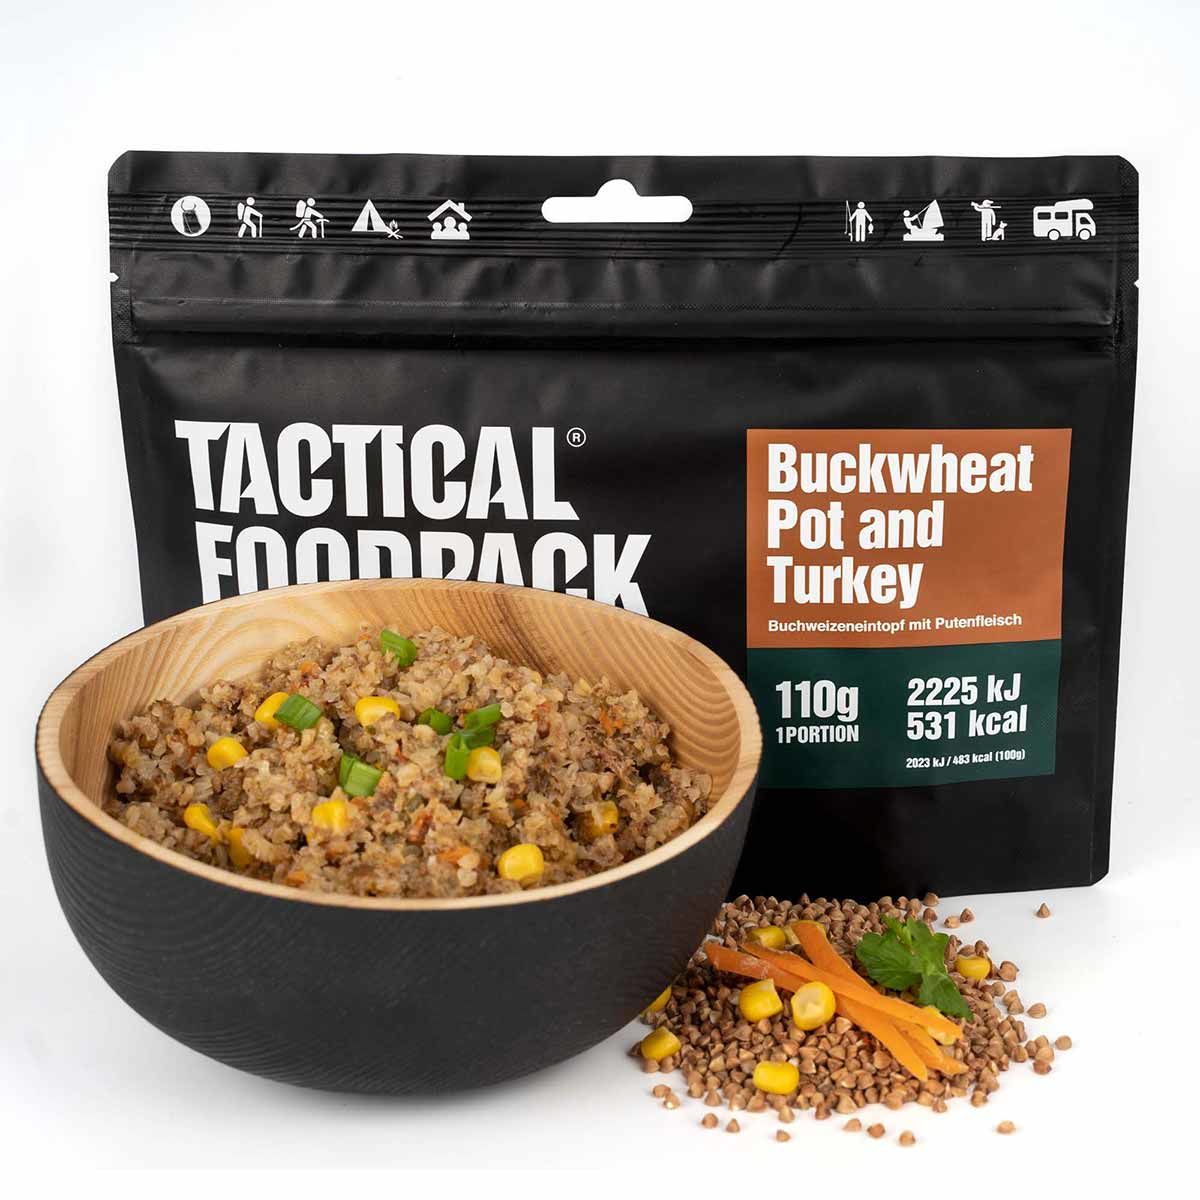 Buckwheat Pot and Turkey